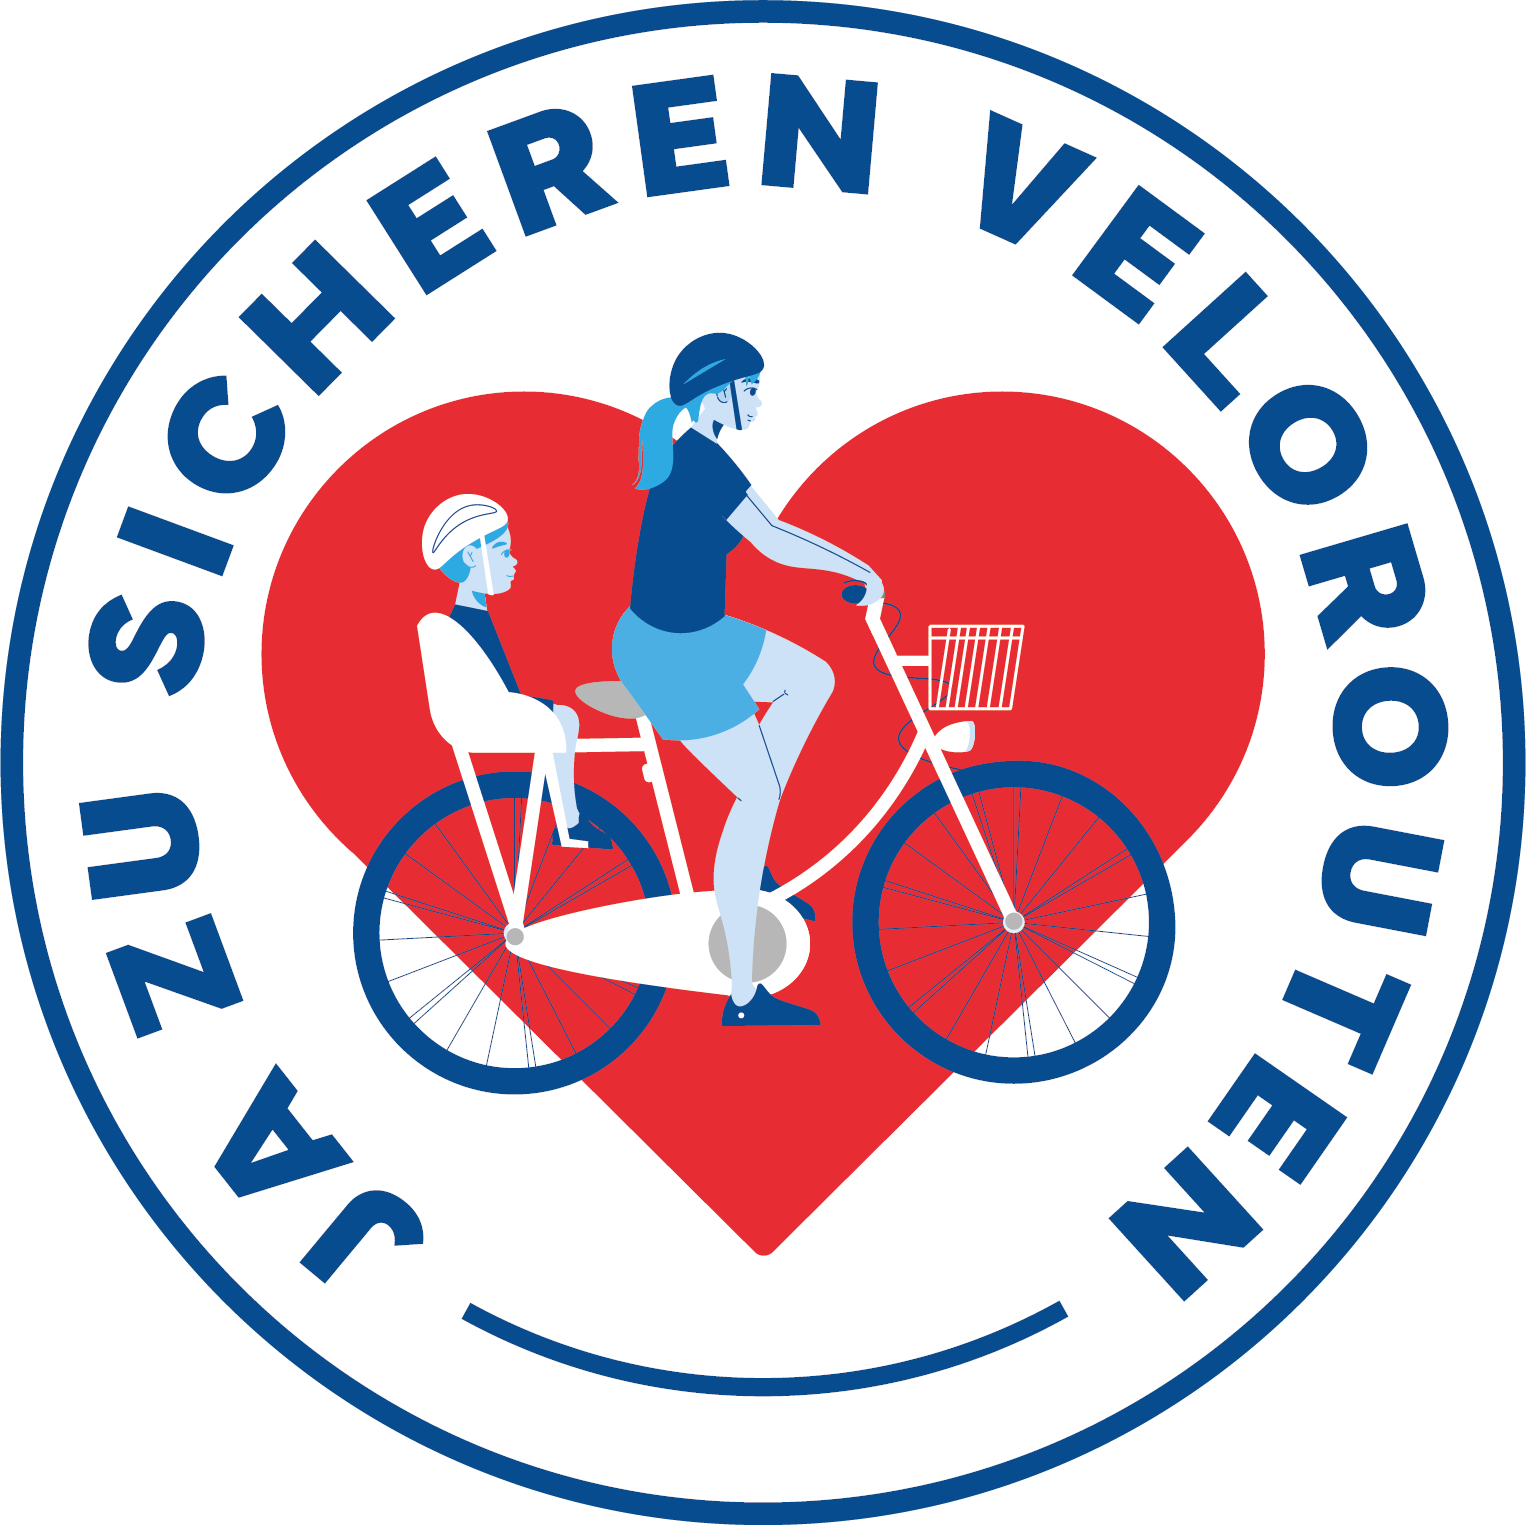 Kreisrundes Logo der Initiative; Text "Ja zu sicheren Velorouten", darin eine Frau auf dem Velo mit Kind im Kindersitz, im Hintergrund ein rotes Herz.